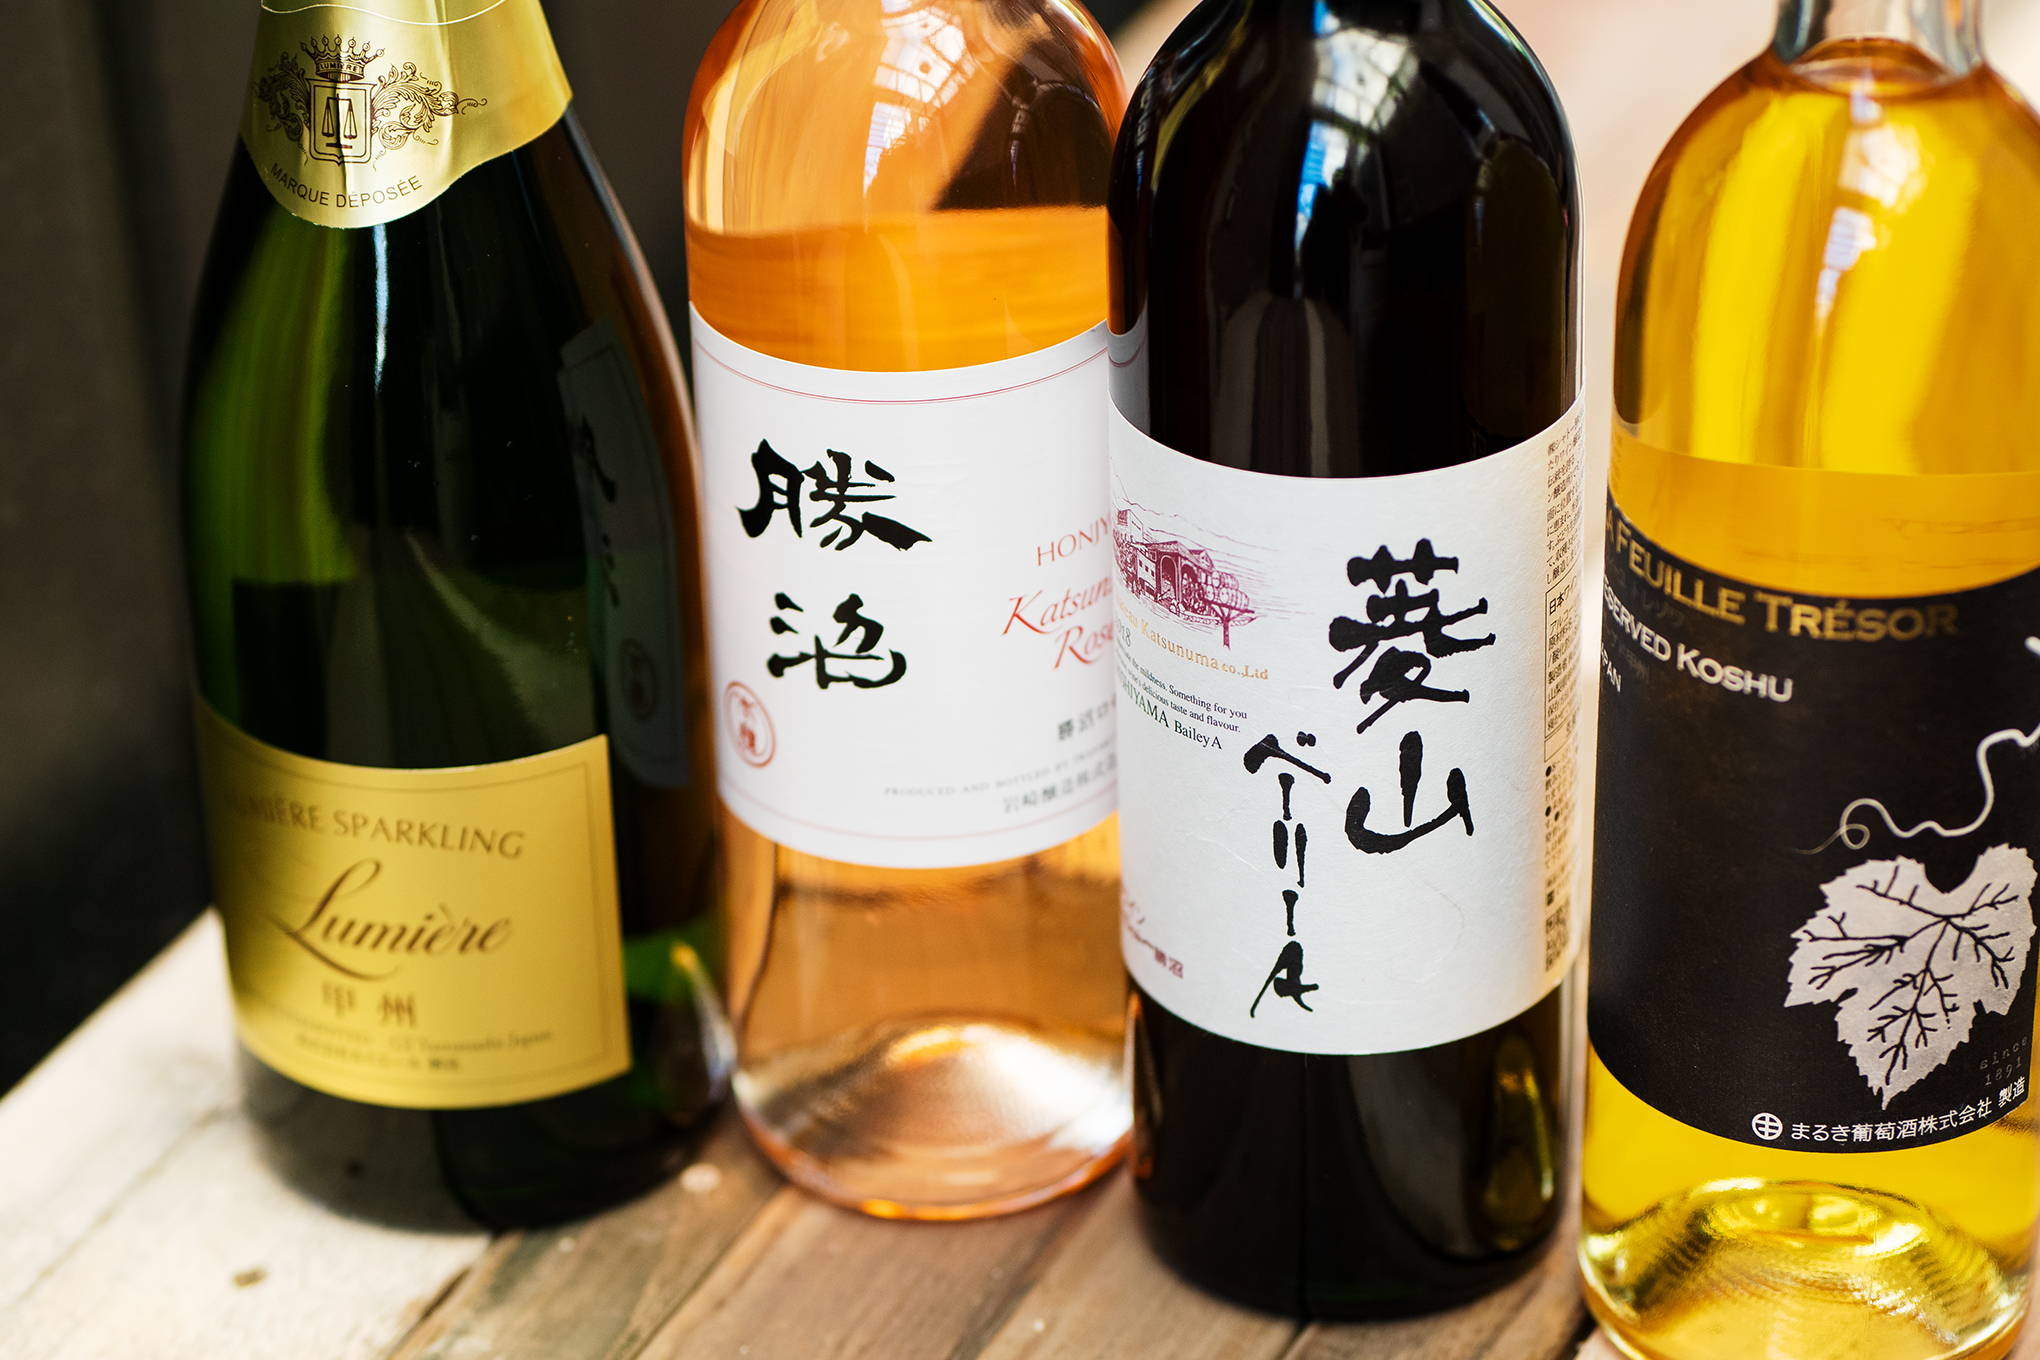 時の流れに思いを馳せながら。日本ワインの礎を作った、老舗ならではの味わいをじっくりと楽しめる銘柄を堪能して。